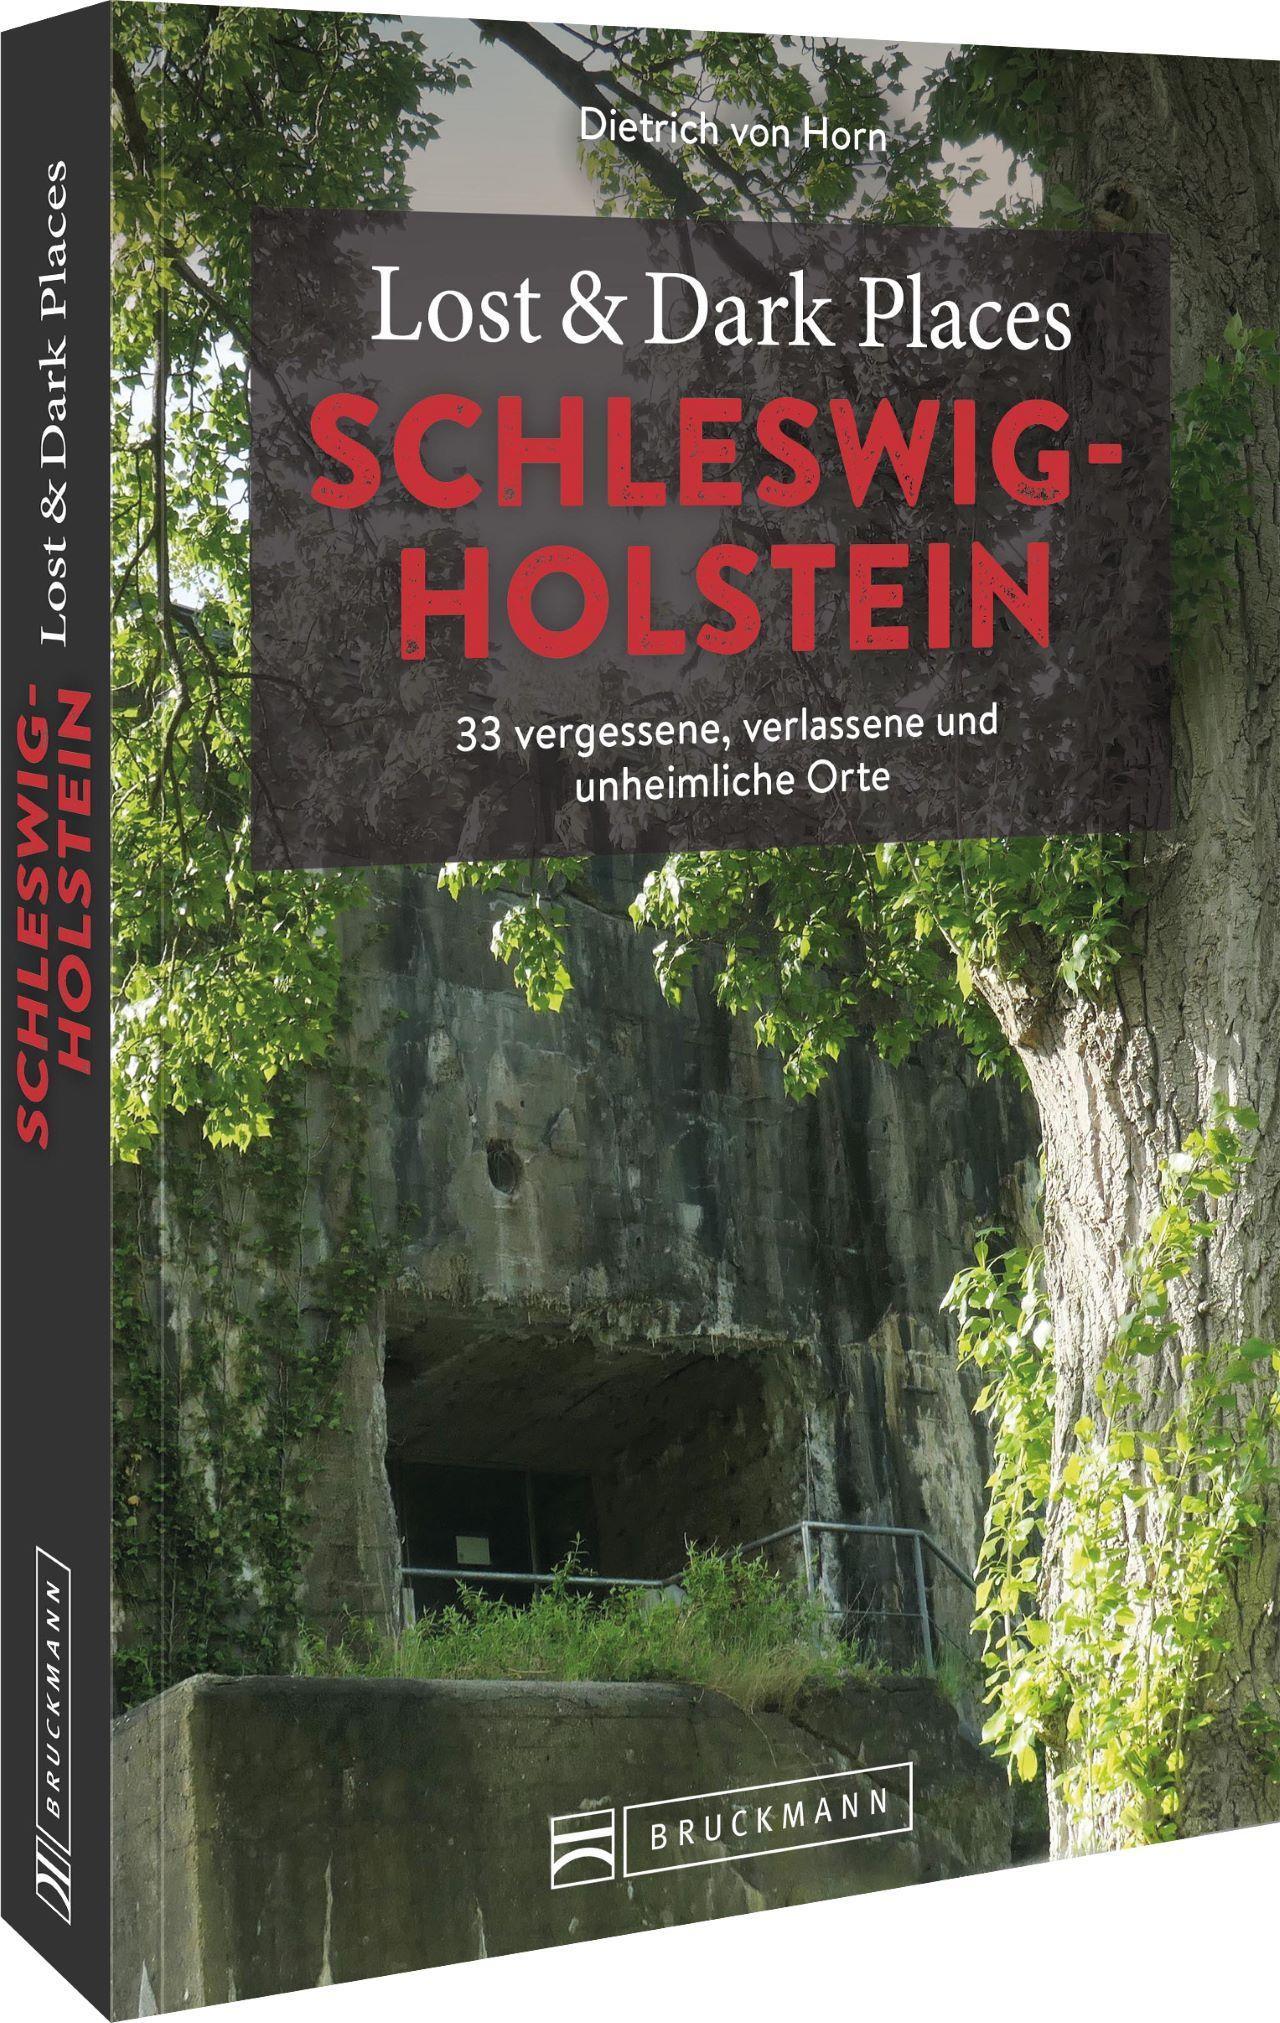 Lost & Dark Places Schleswig-Holstein 33 vergessene, verlassene und unheimliche Orte